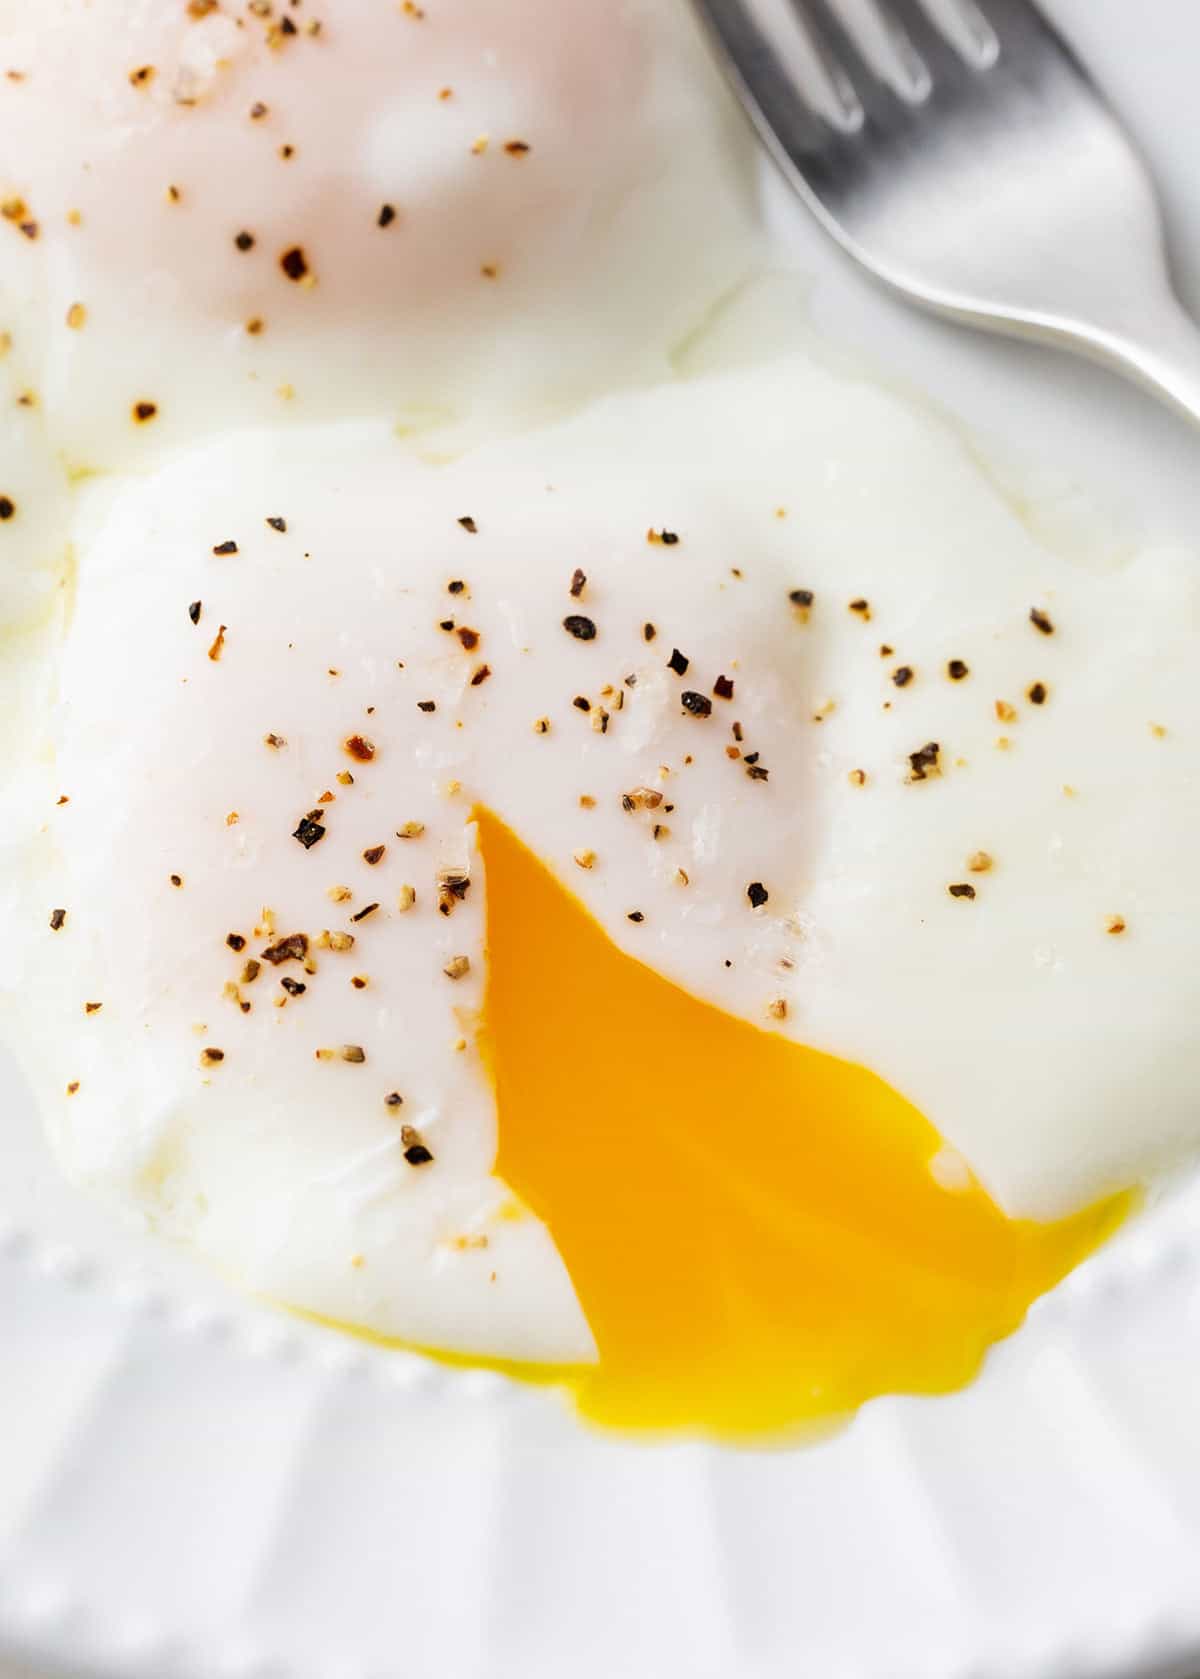 https://www.iheartnaptime.net/wp-content/uploads/2023/01/Poached-eggs-recipe-I-Heart-Naptime-1.jpg